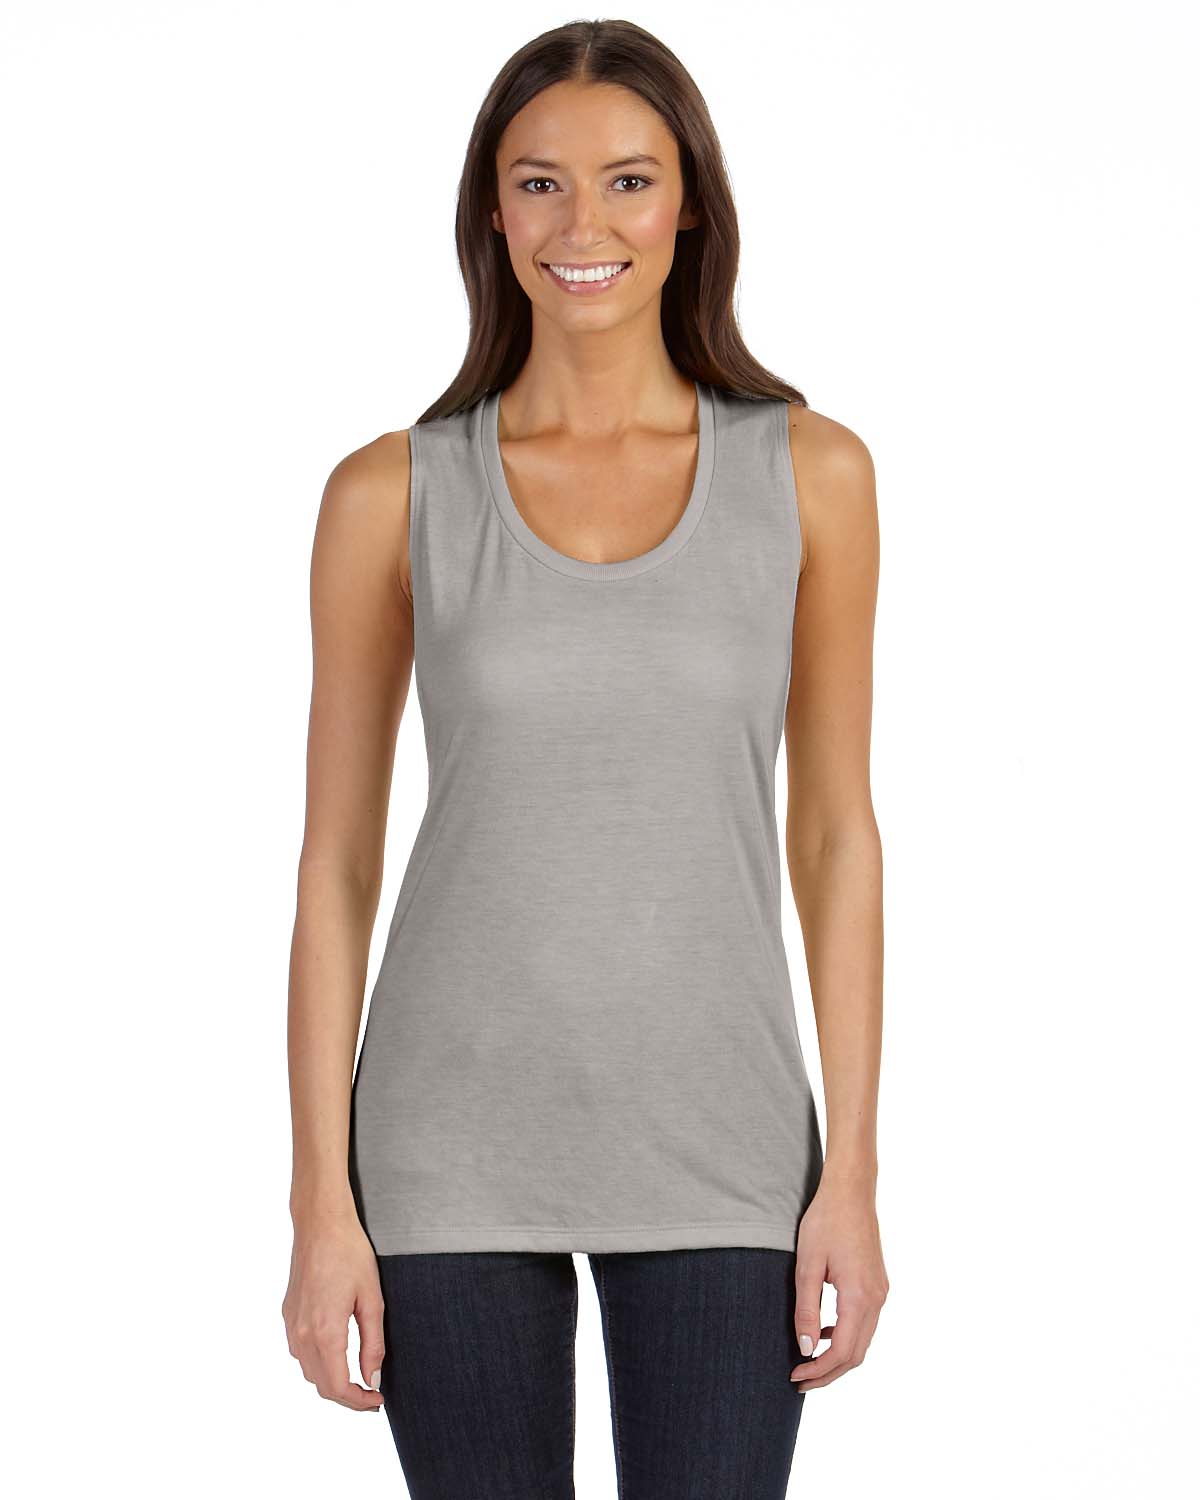 Bella + Canvas Women's Flowy Scoop Muscle TanK Top Shirt M-B8803 | eBay